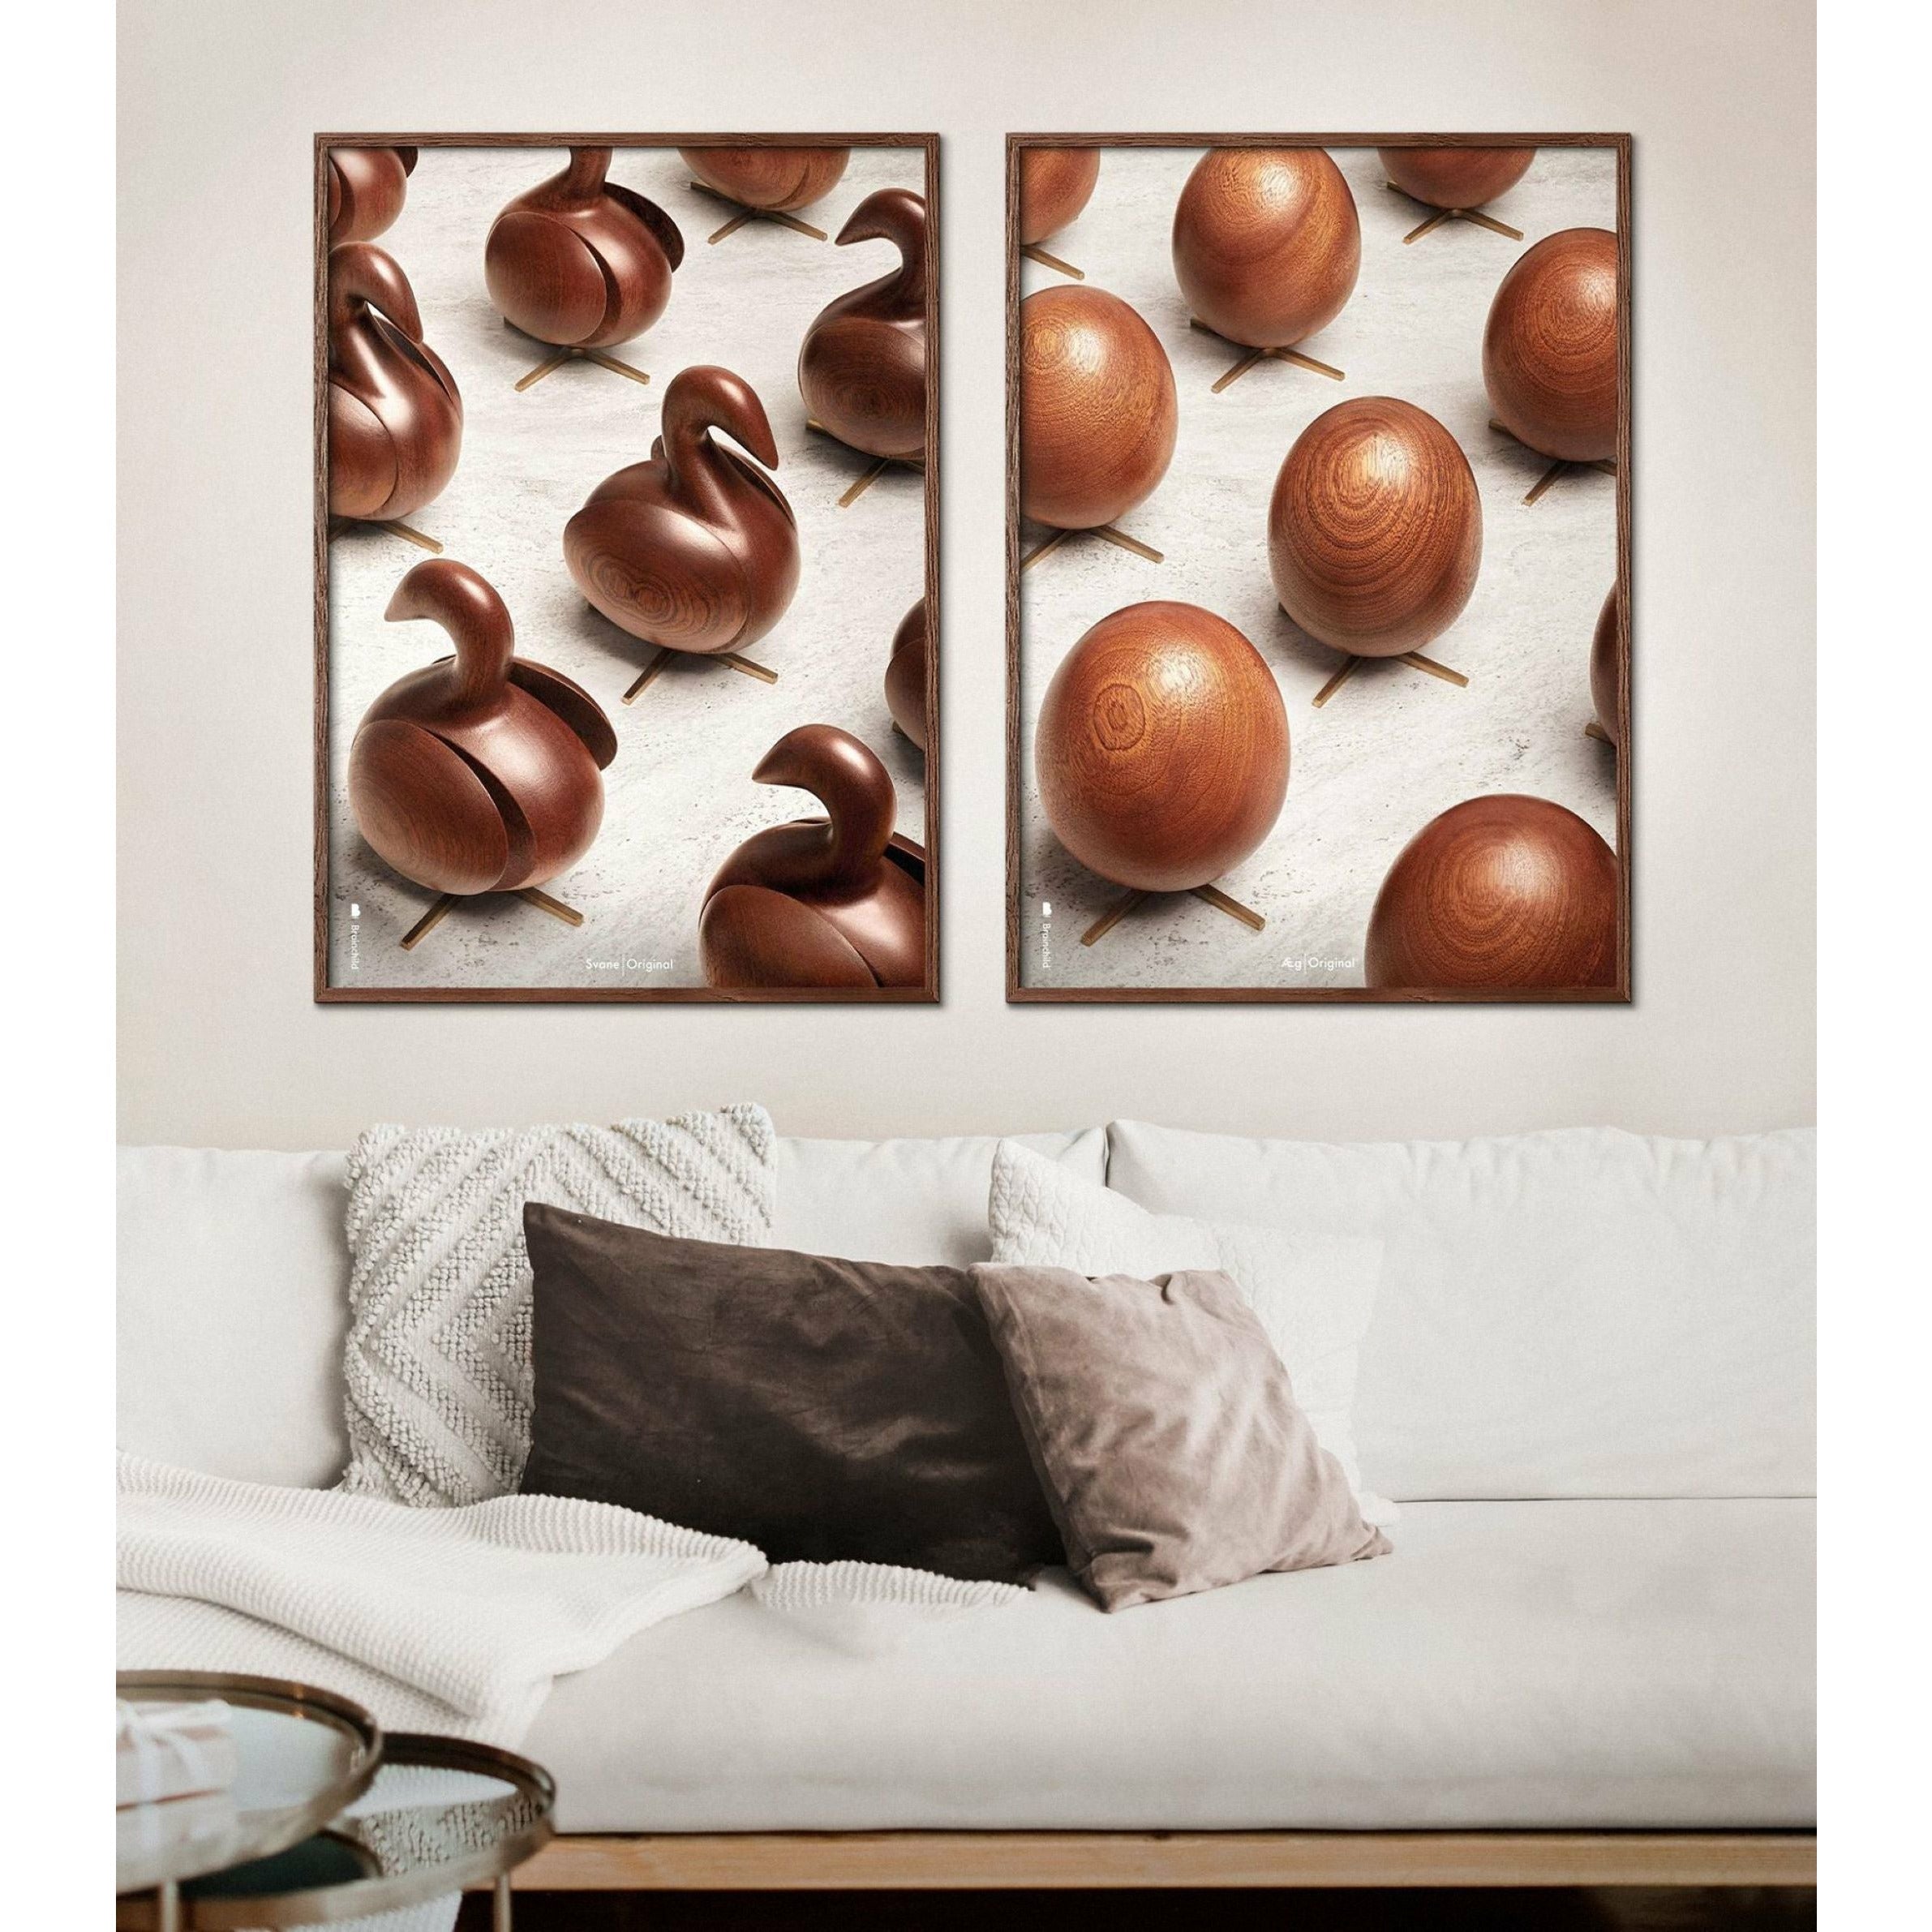 Poster per sfilata di uova di prima cornice, 50x70 cm